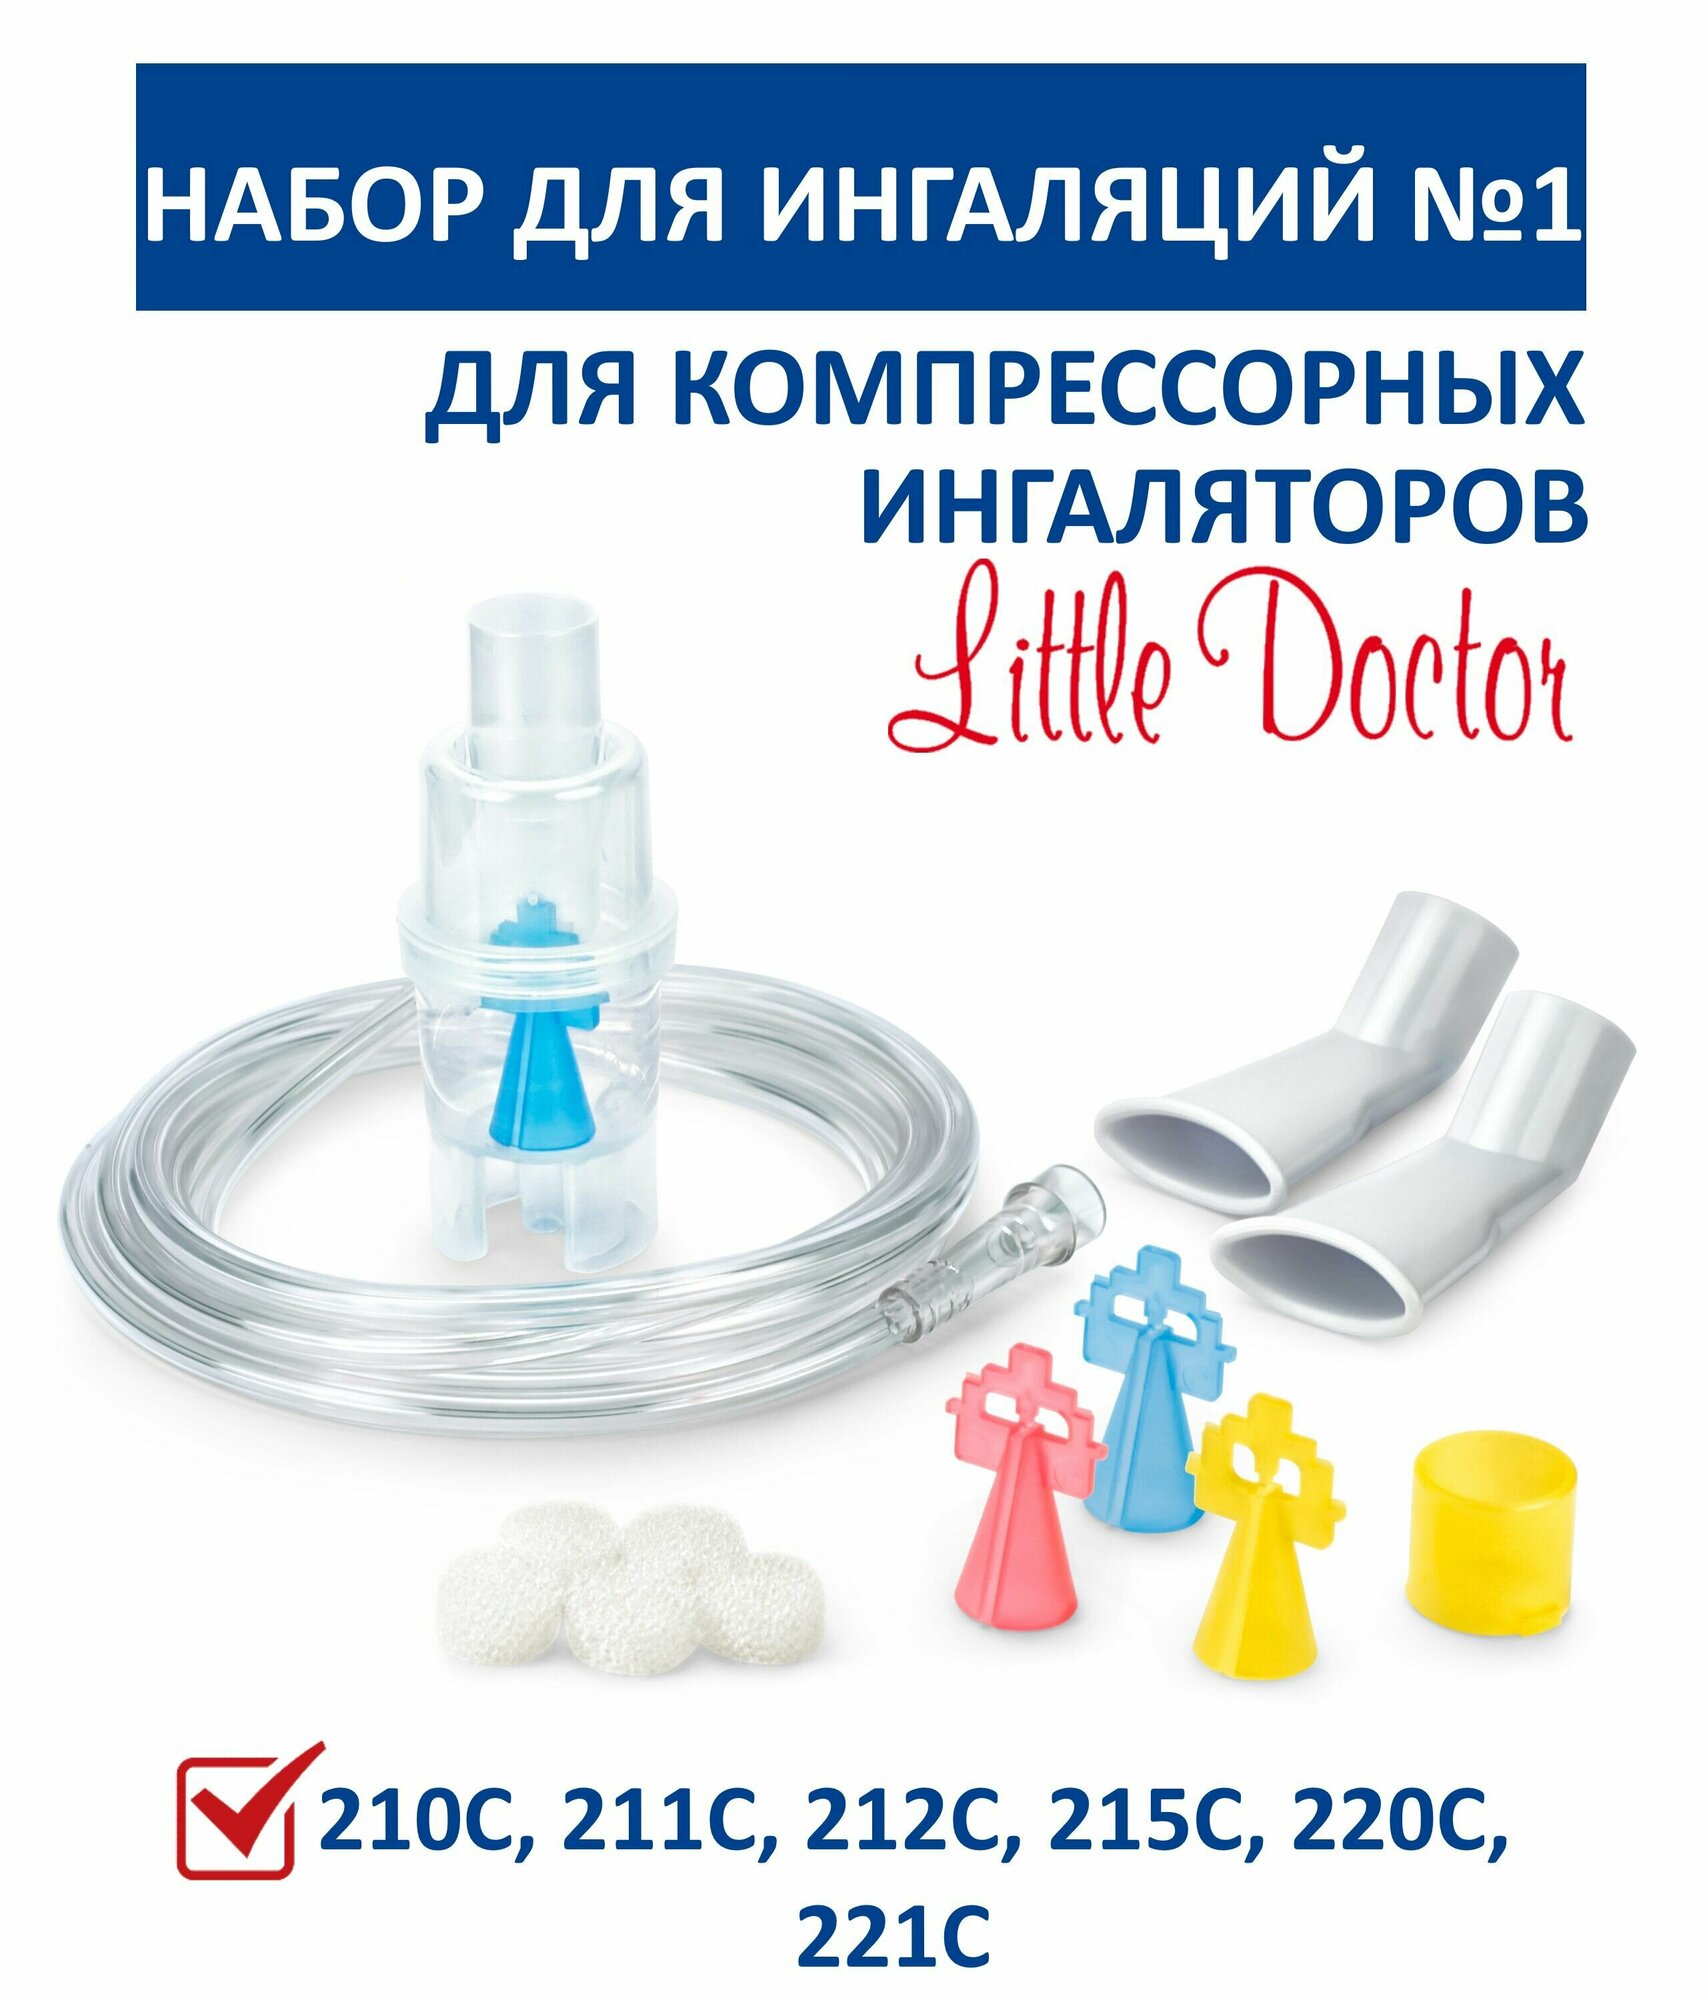 Набор для ингаляции №1 Little Doctor (комплектующие для компрессорных ингаляторов LD)